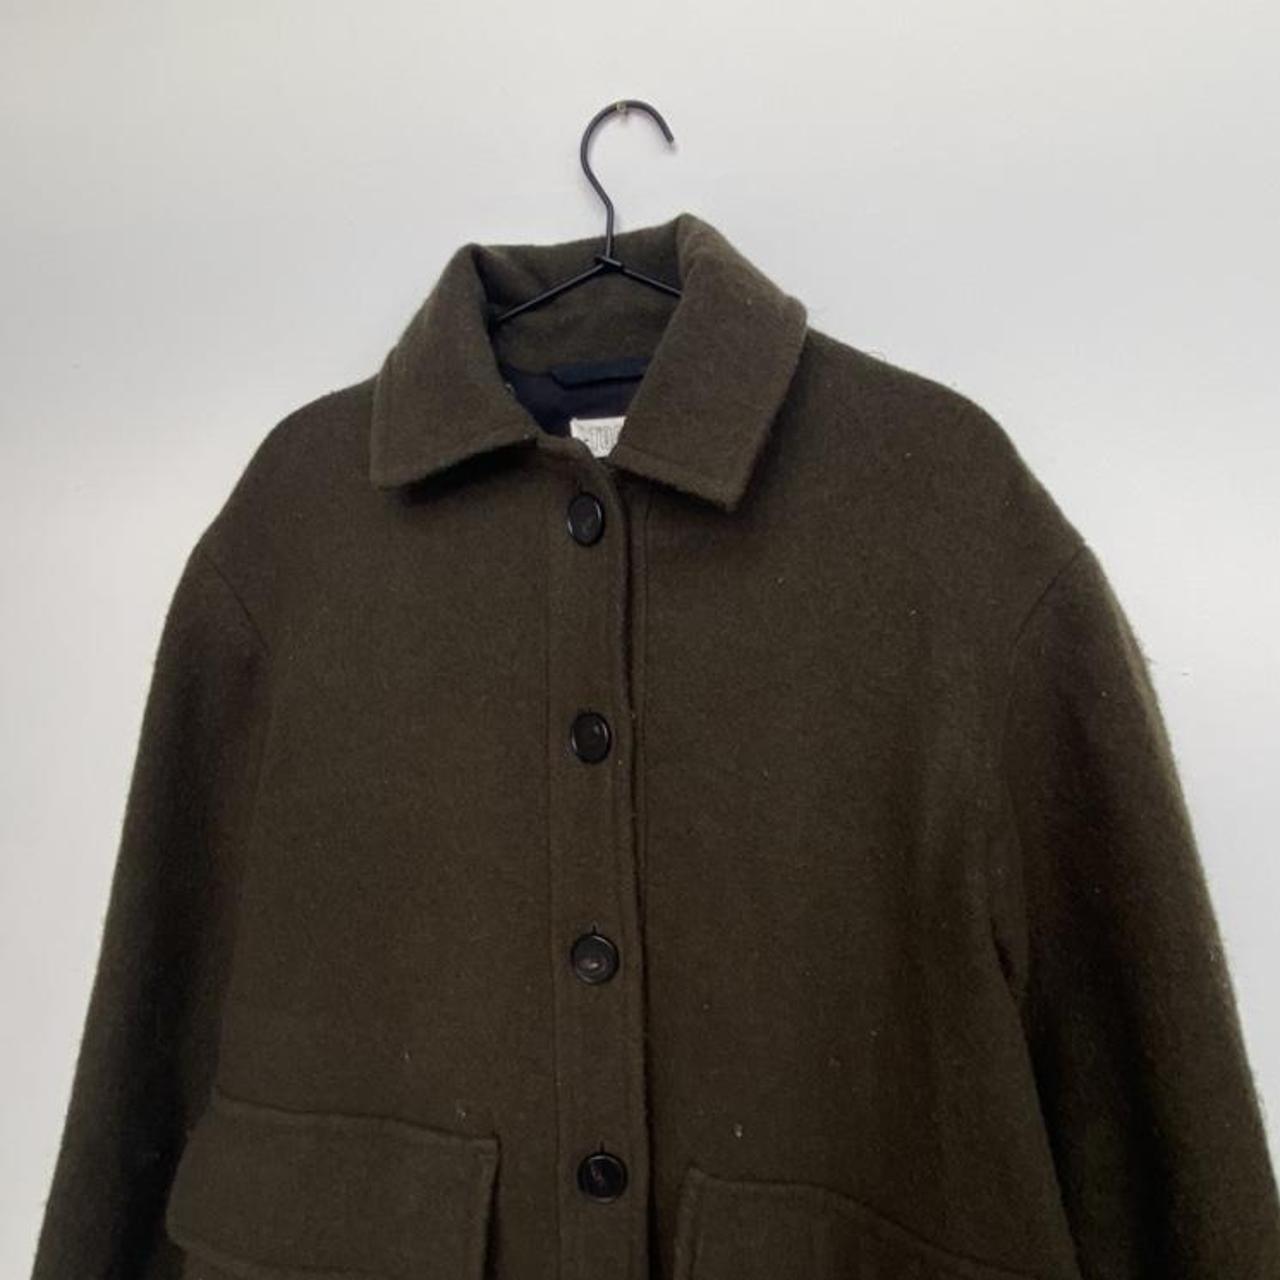 Product Image 3 - Wool TOAST pea coat. Nice